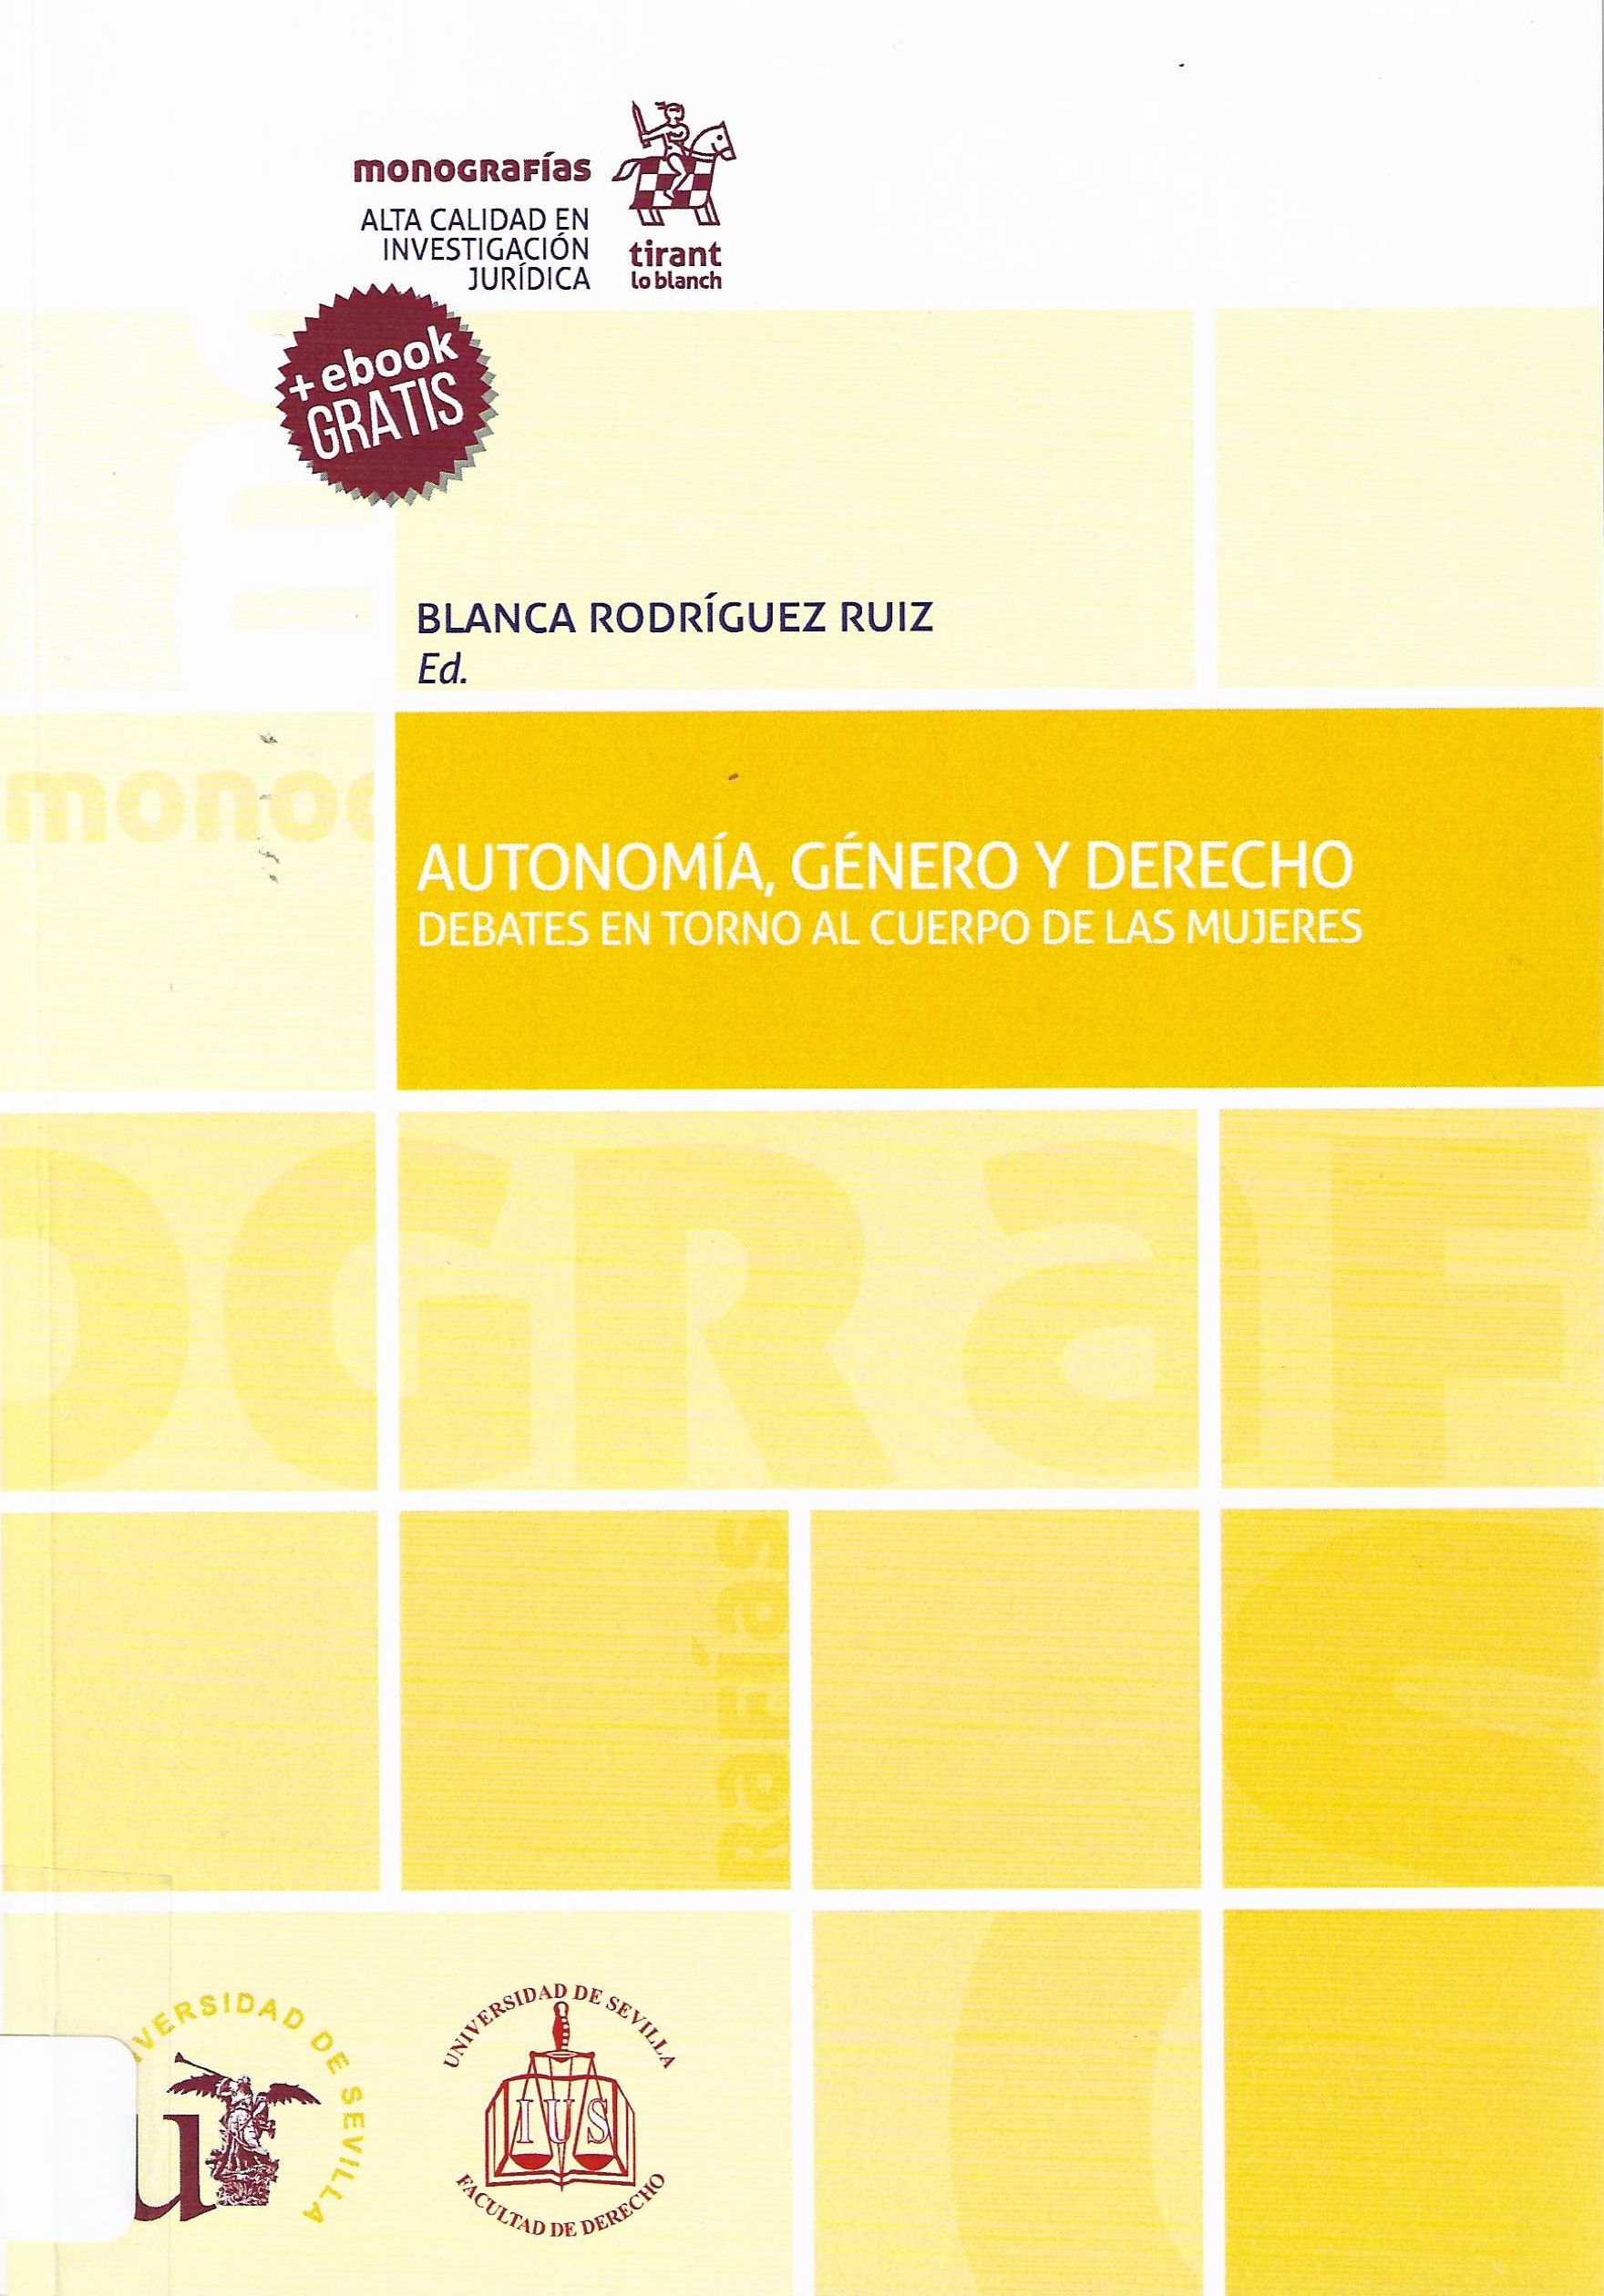 Imagen de portada del libro Autonomía, género y derecho